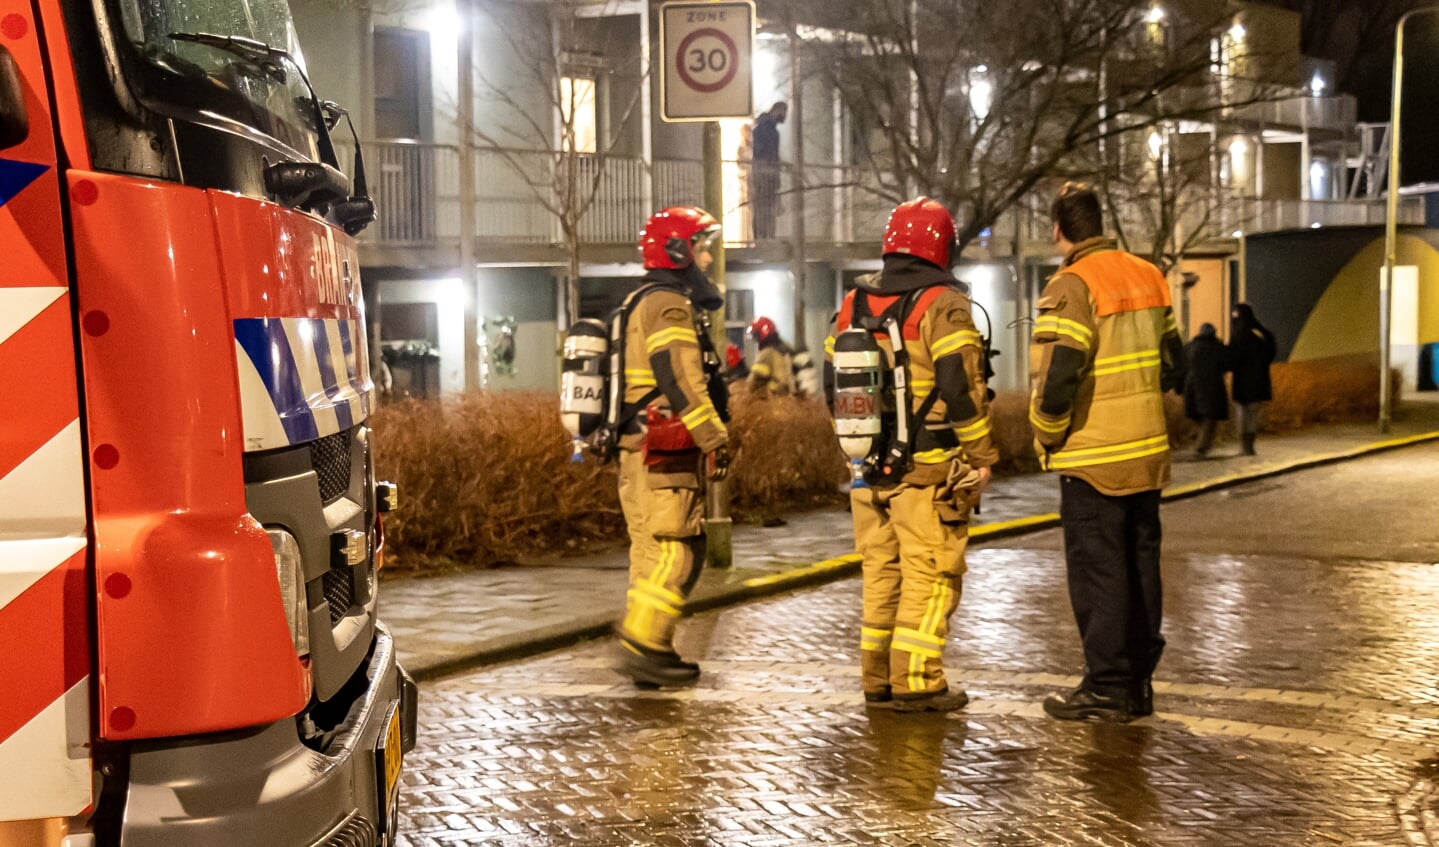 Brandweer en politie in actie op de Parklaan in Aalsmeer